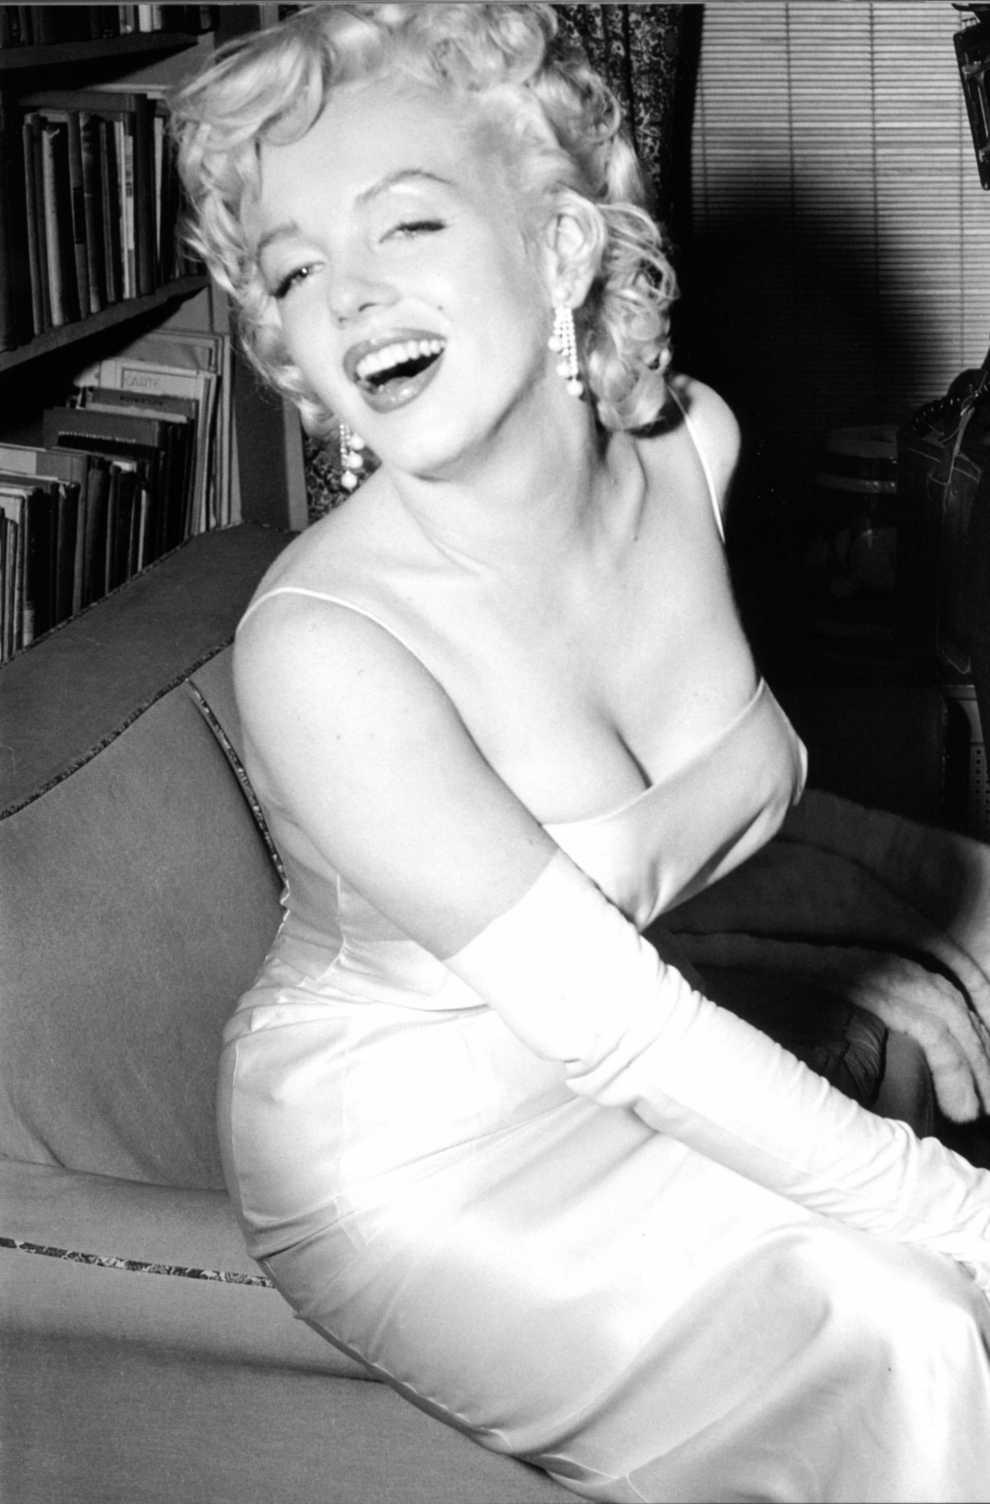 Marilyn Monroe é o rosto de marca de beleza 52 anos após sua morte